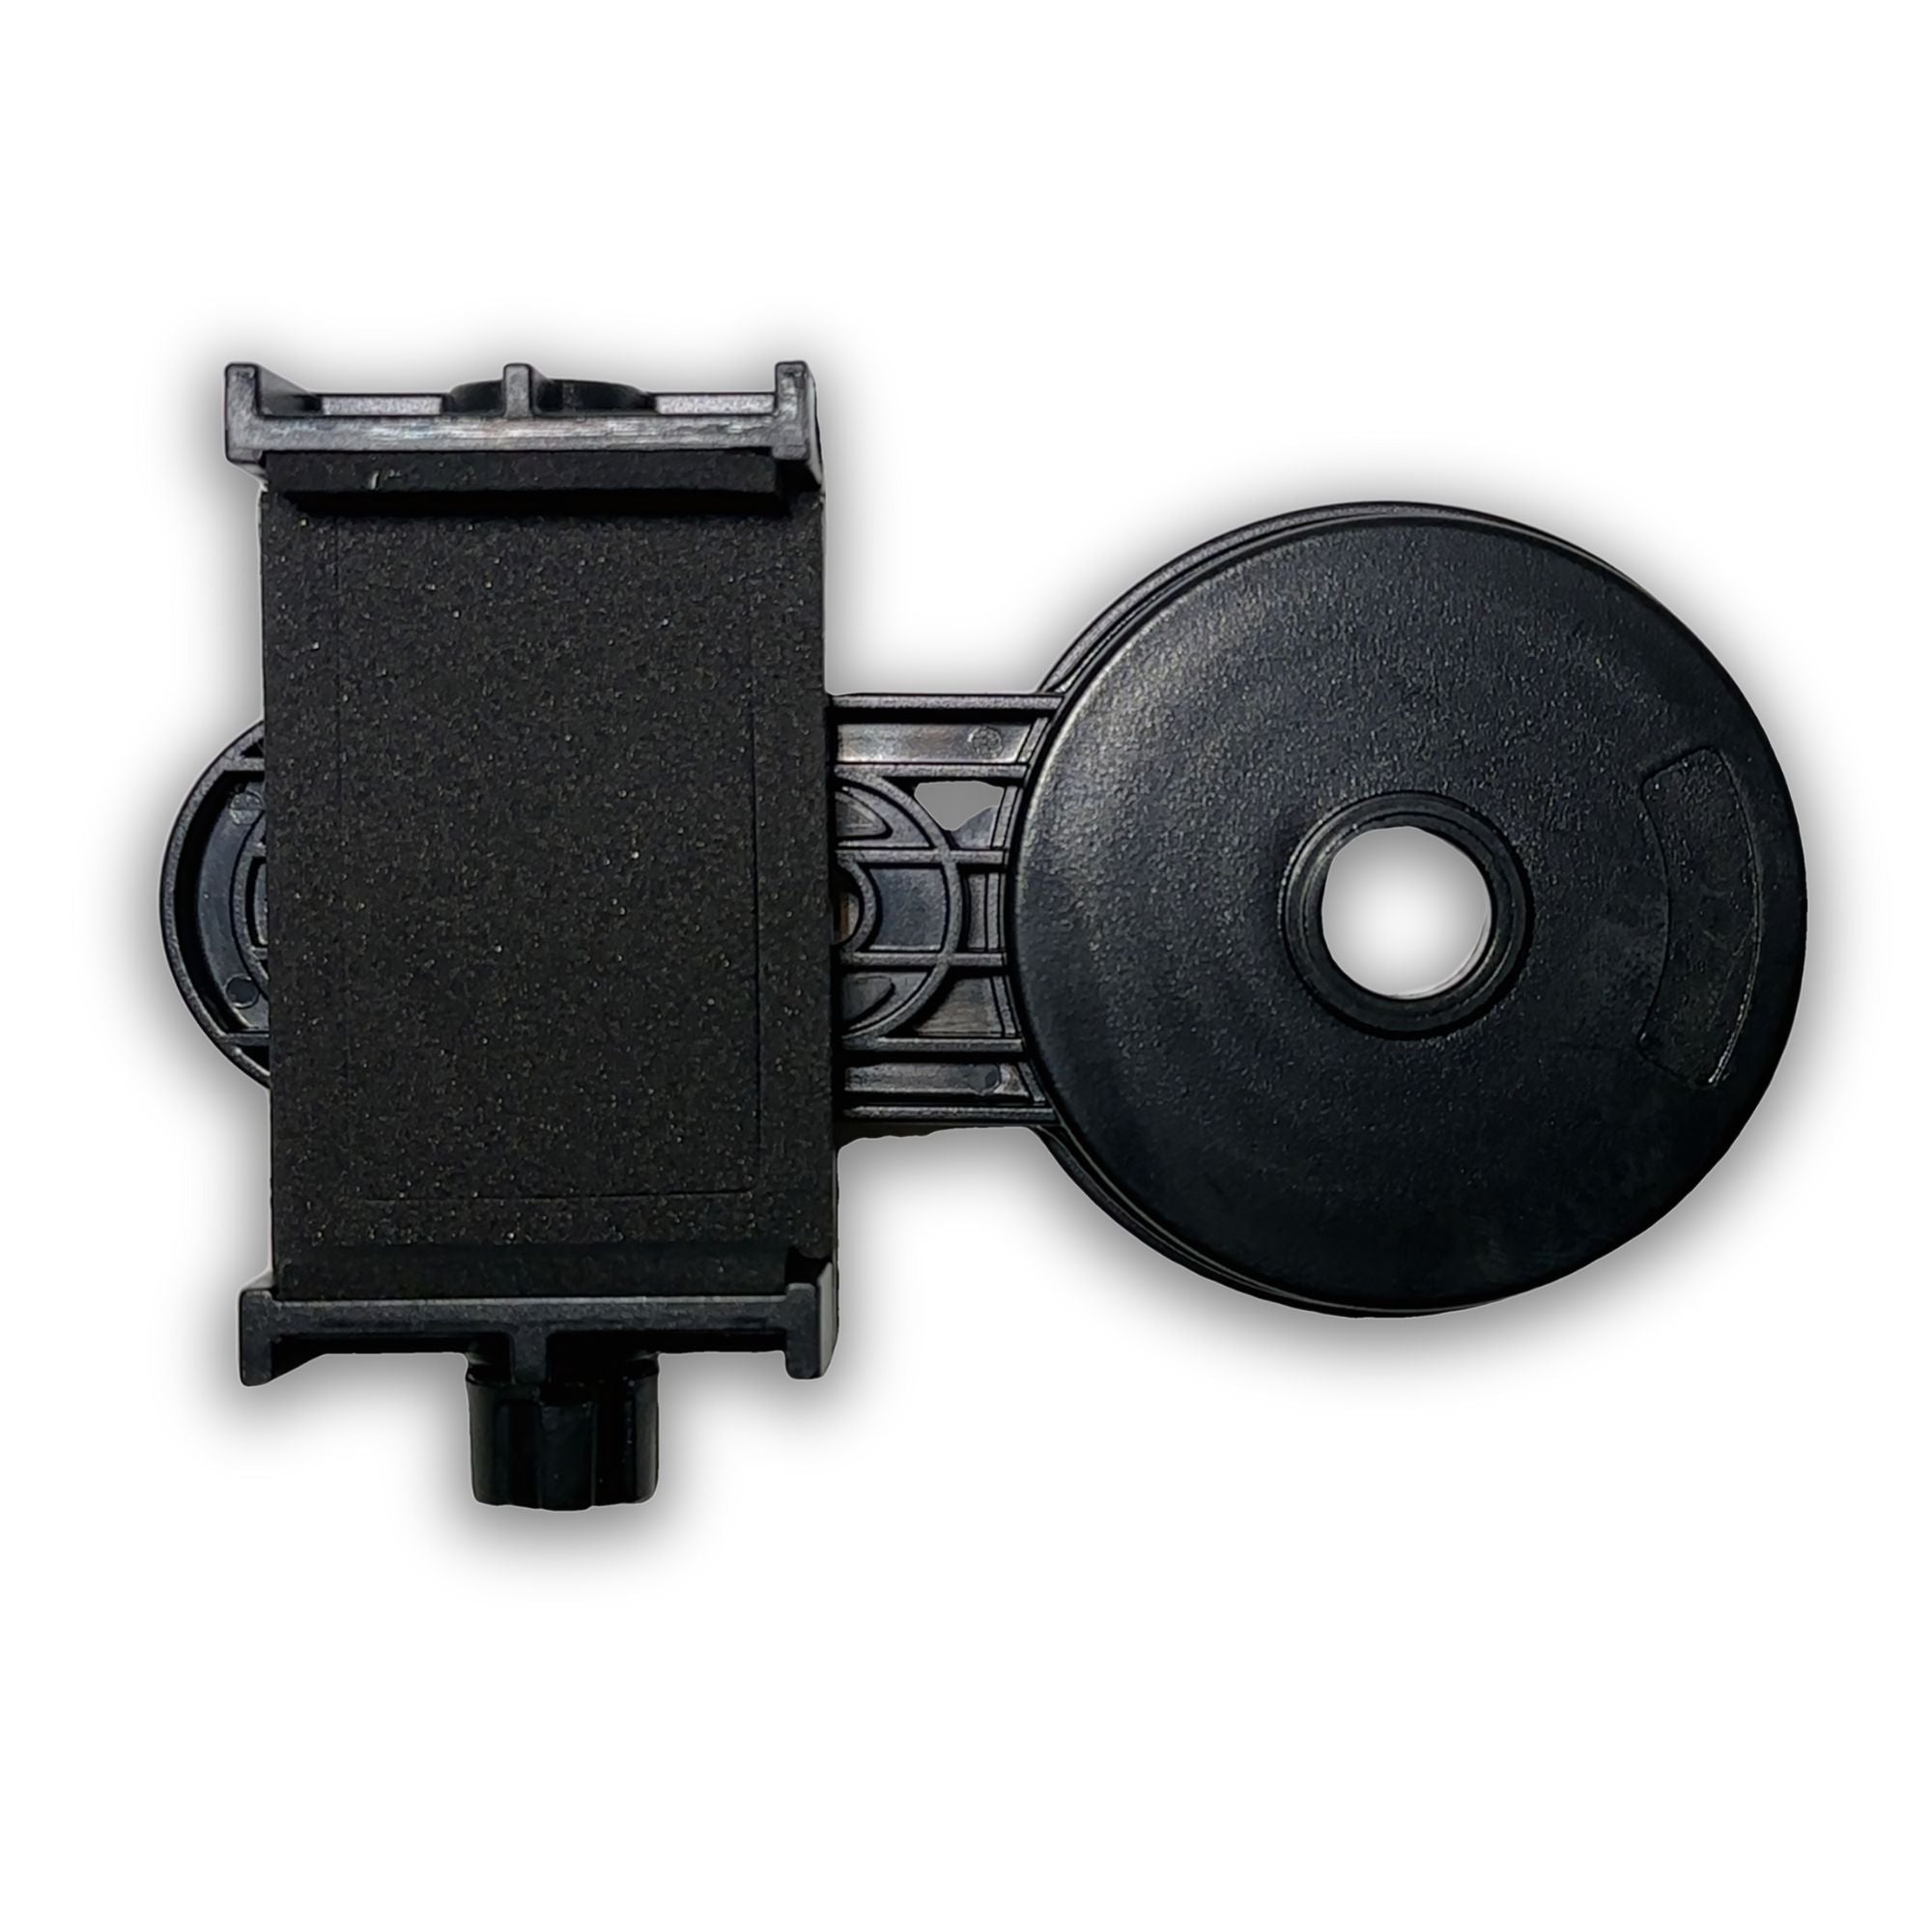 Tavaline telefonihoidik mikroskoobi jaoks, mis võimaldab pildistada vääriskive